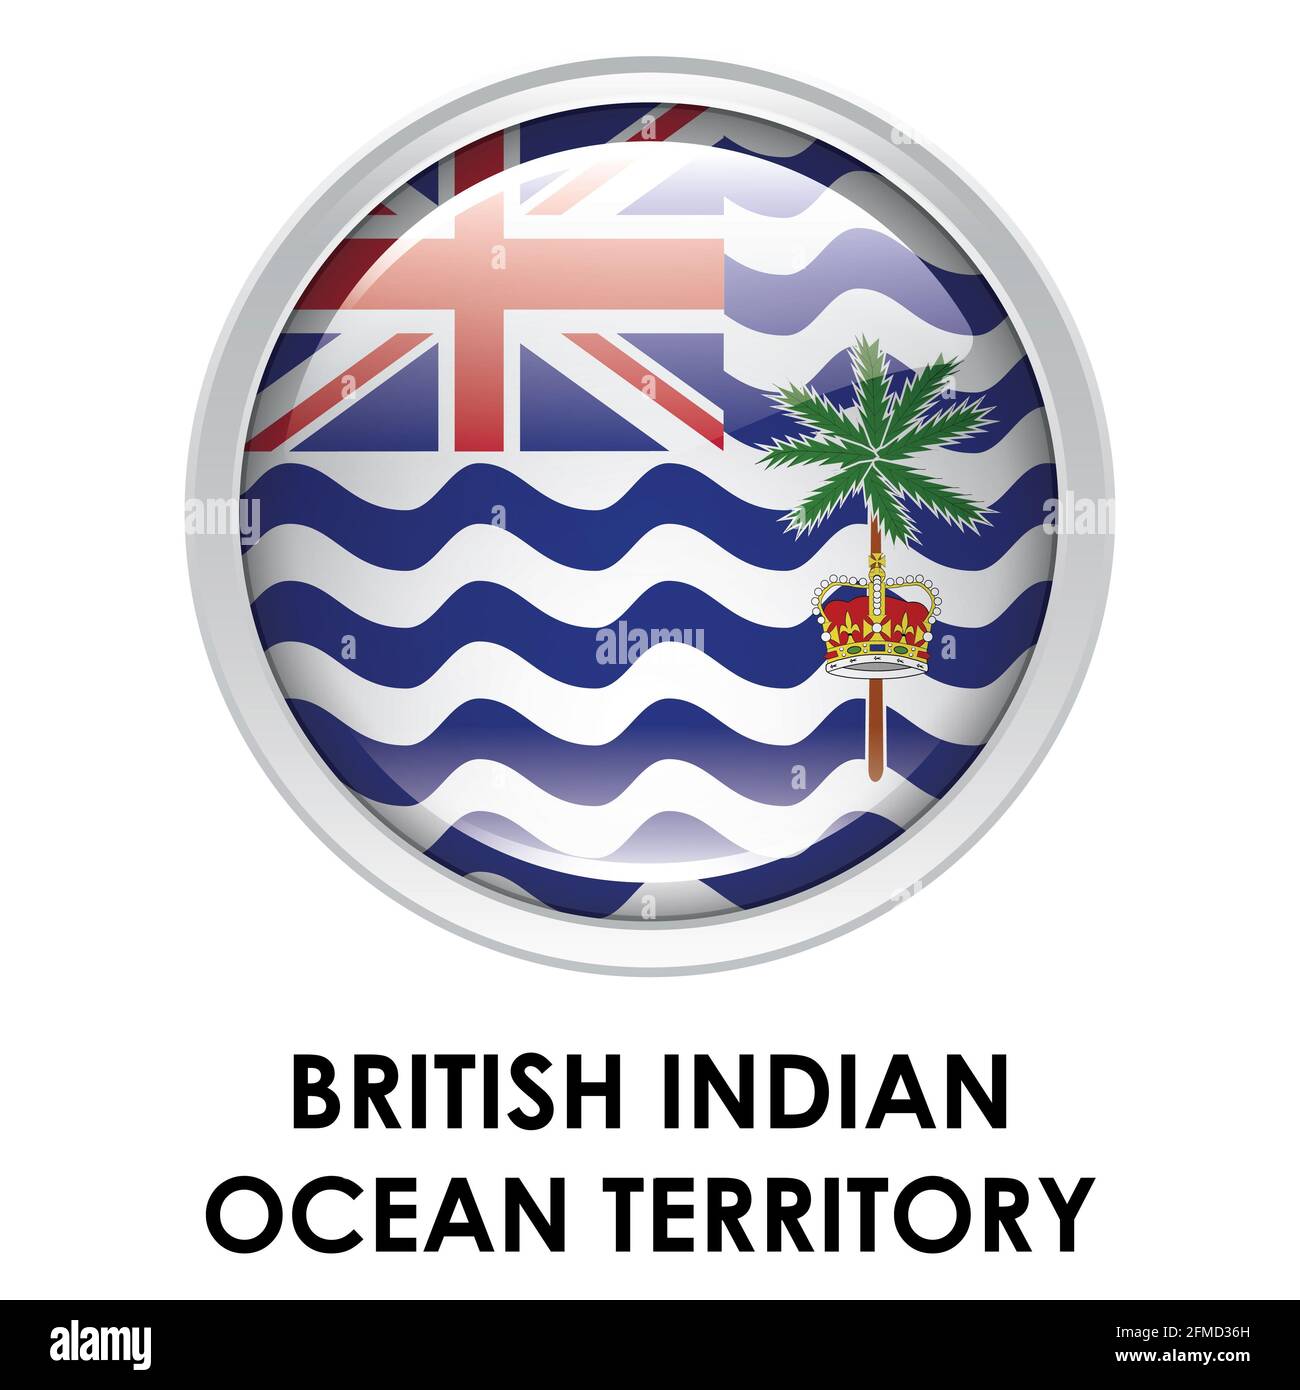 Drapeau rond du territoire britannique de l'océan Indien Banque D'Images